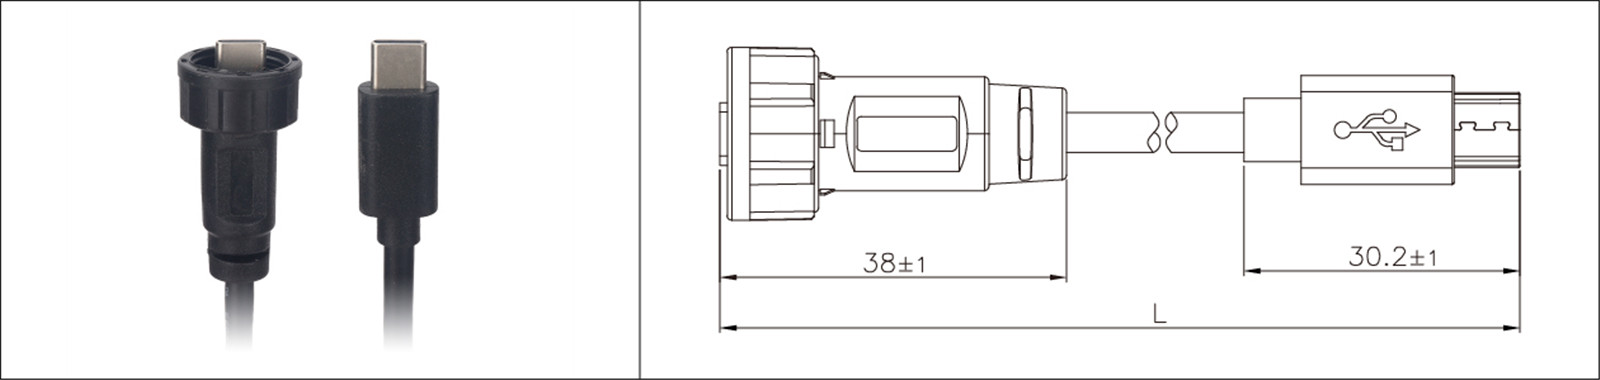 Micro USB montaggio a pannello tipo 2.0 3.0 femmina e maschio impermeabile IP67 cavo di prolunga sovrastampato industriale connecto-02 (7)